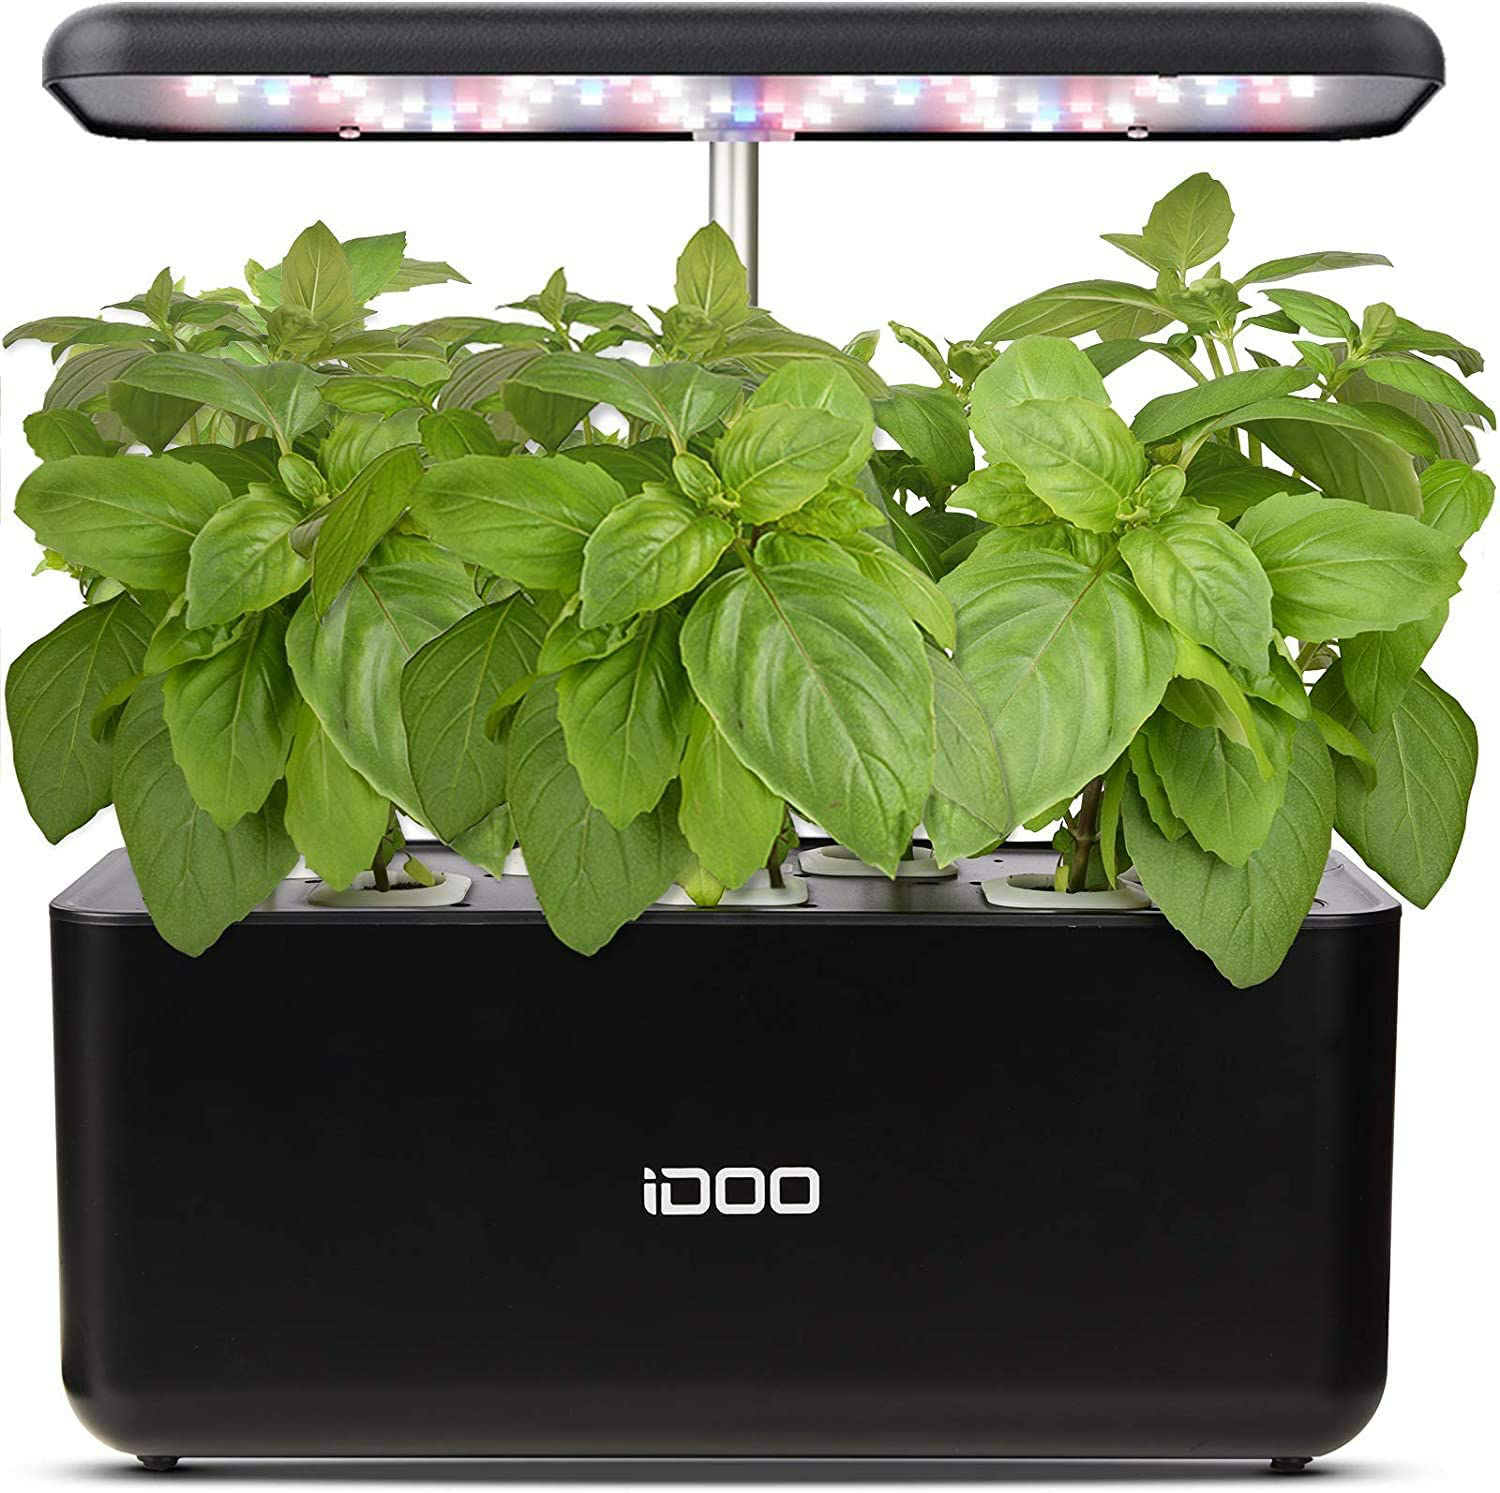 Amazon.com : iDOO Hydroponics Growing $69.99